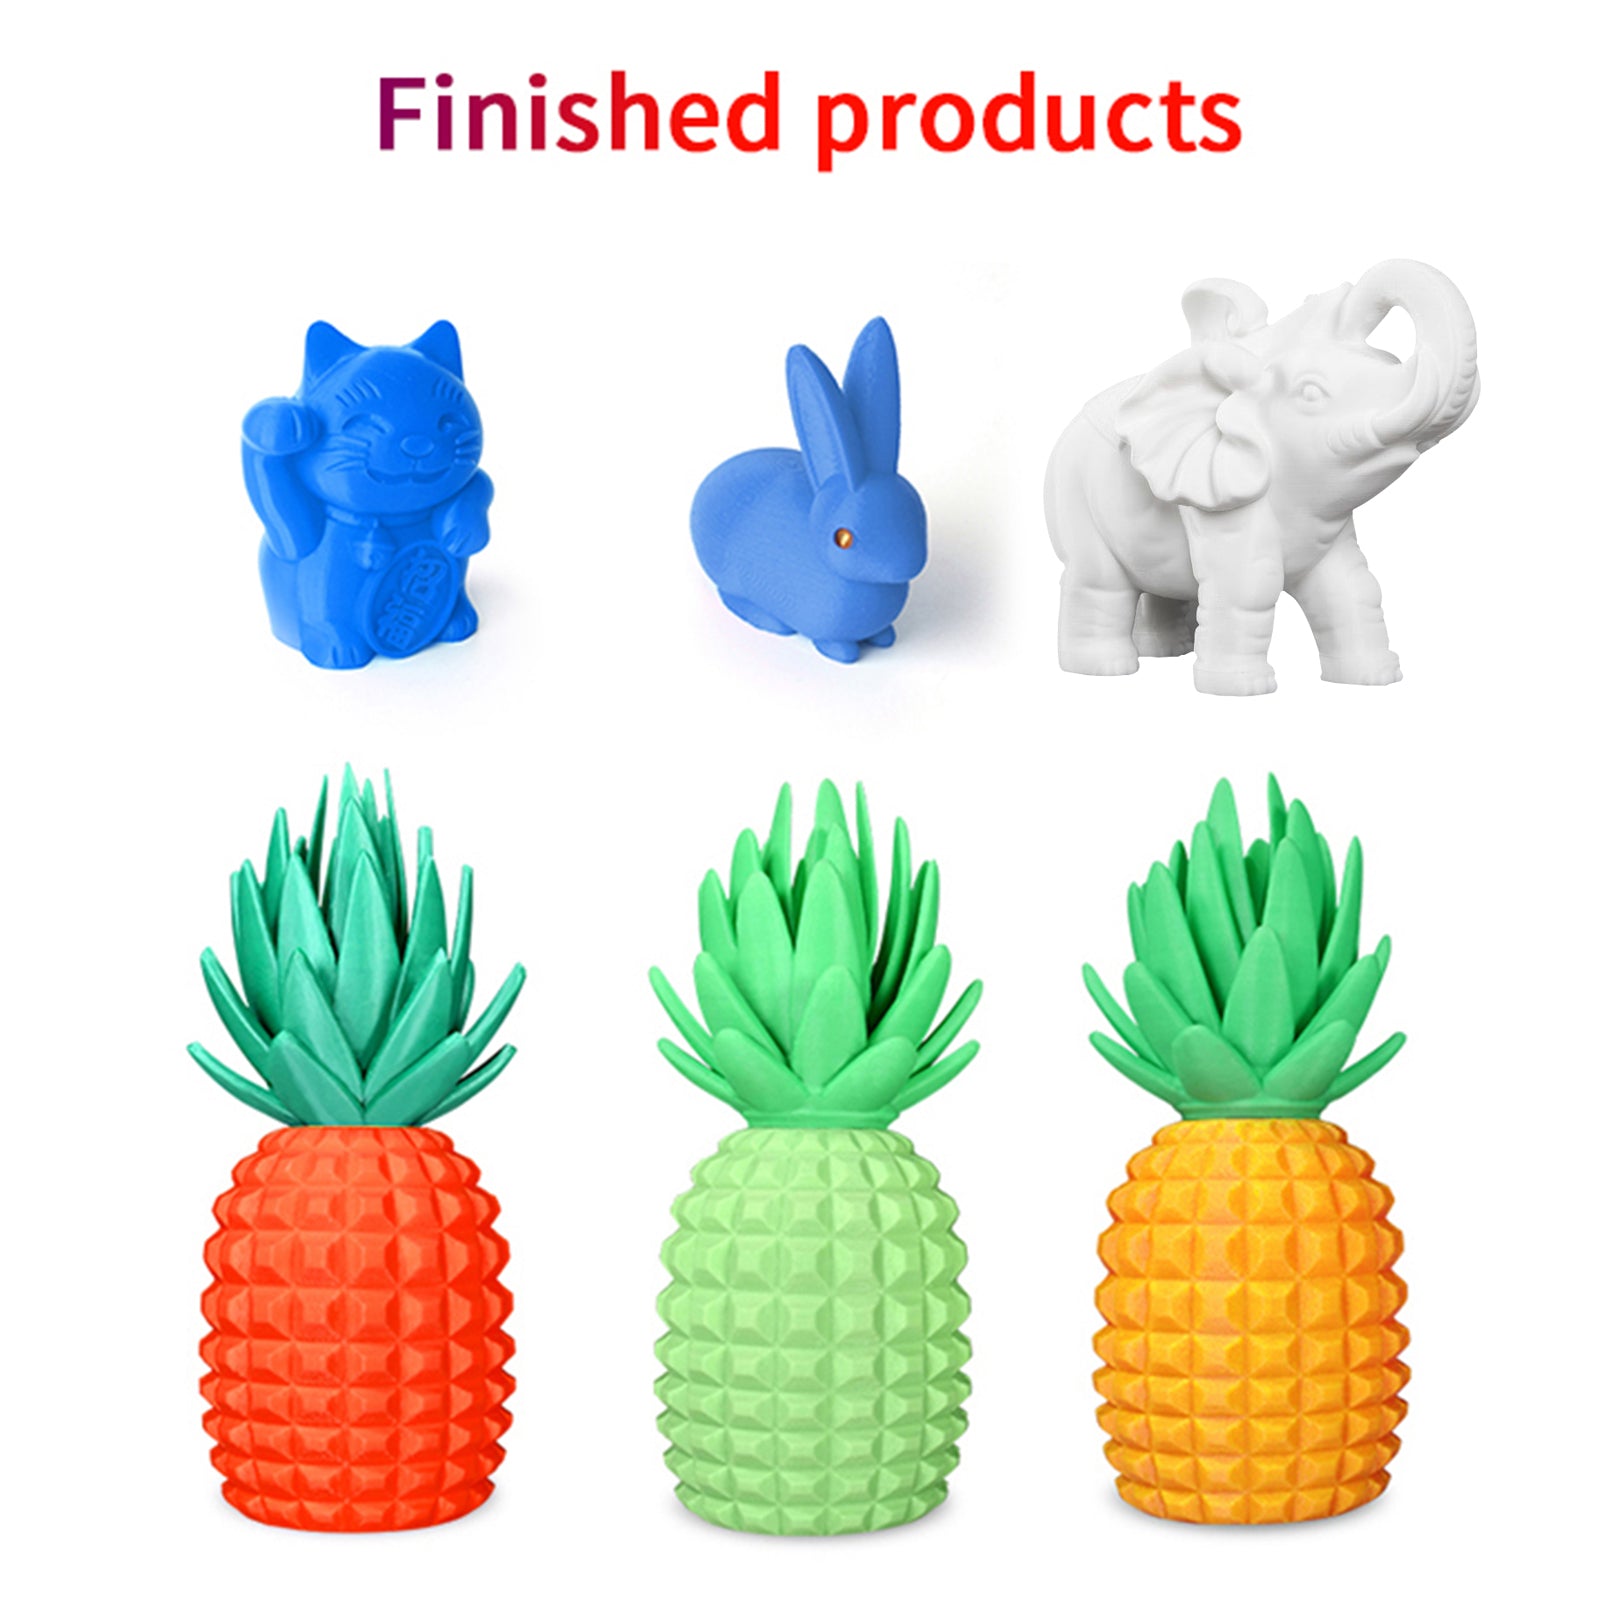 1 kg Spool PLA Filament 3D Printer Filament 1.75mm diameter PLA 3D Printing Material Consumables for Most FDM 3D Printer, Purple